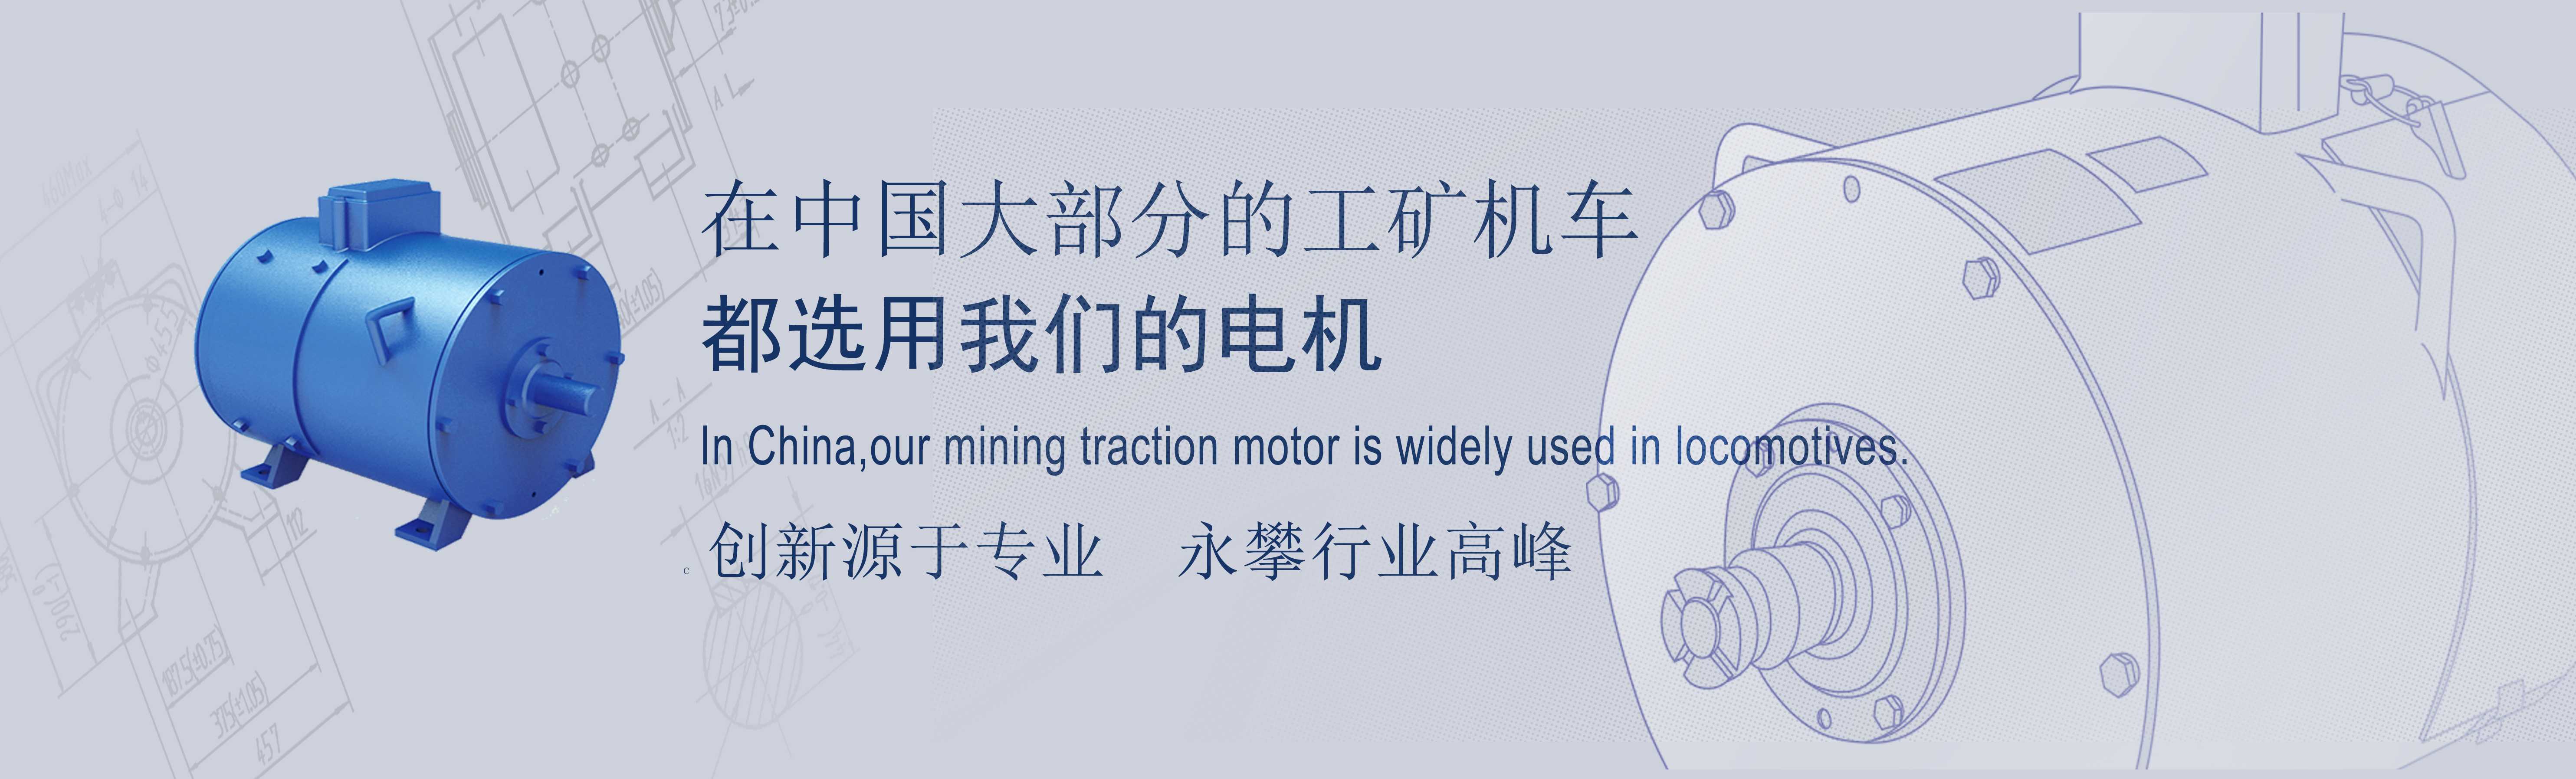 湘潭宇通矿用锂电池电机车客户反馈